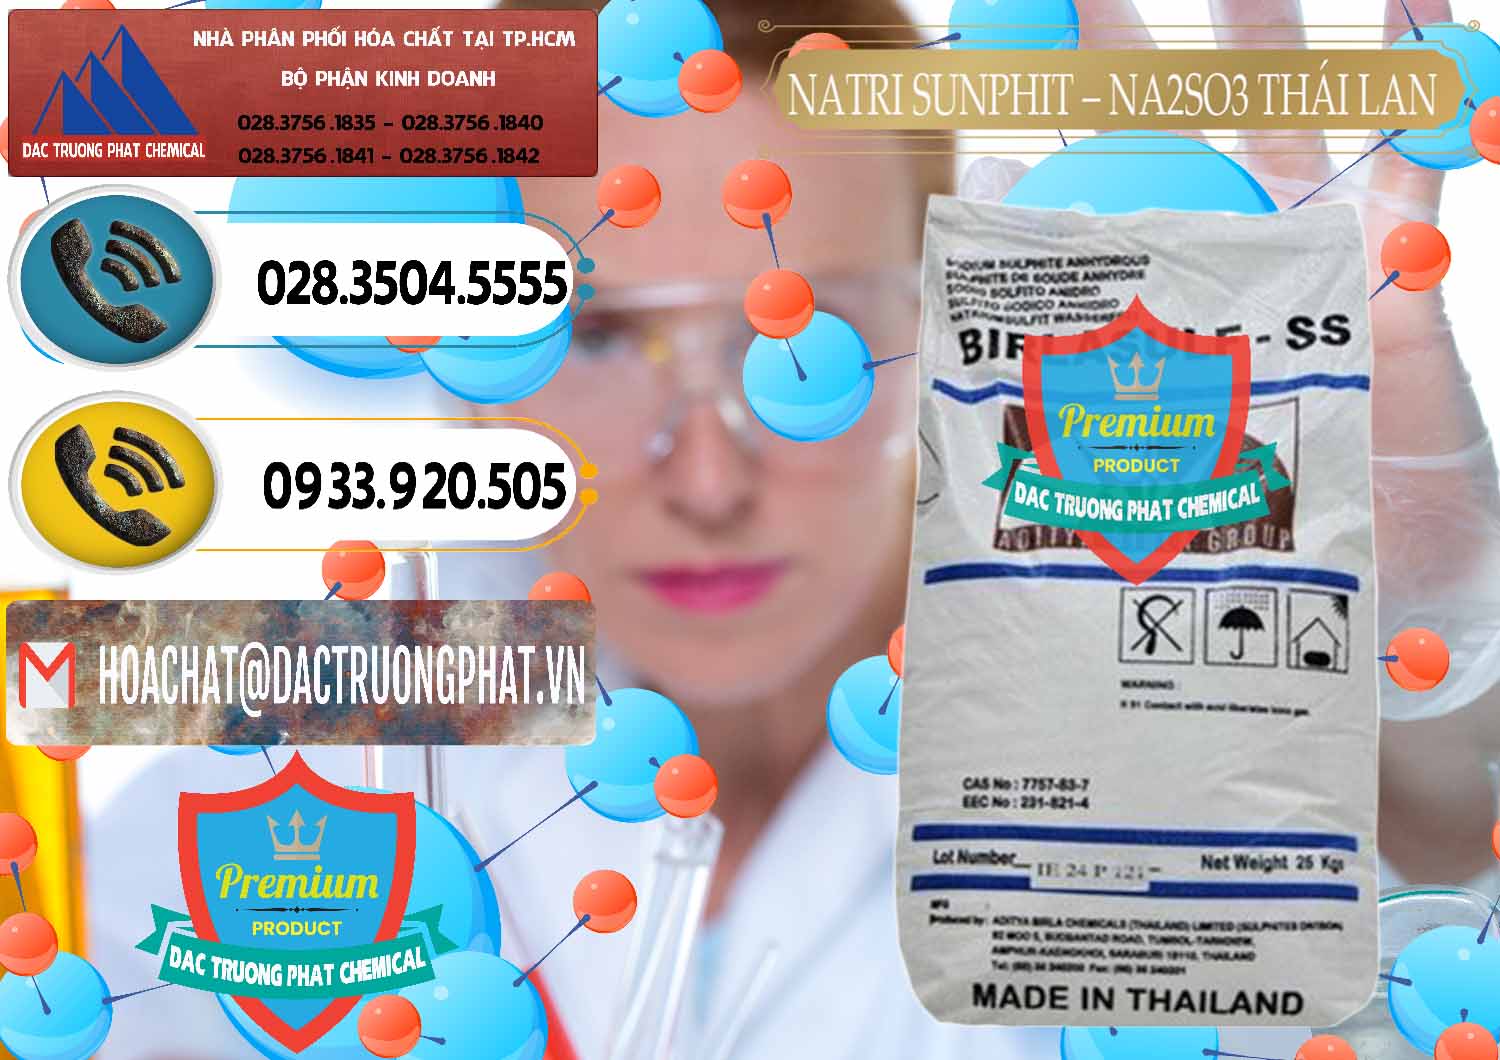 Đơn vị chuyên bán và cung ứng Natri Sunphit - NA2SO3 Thái Lan - 0105 - Đơn vị cung ứng & phân phối hóa chất tại TP.HCM - hoachatdetnhuom.vn